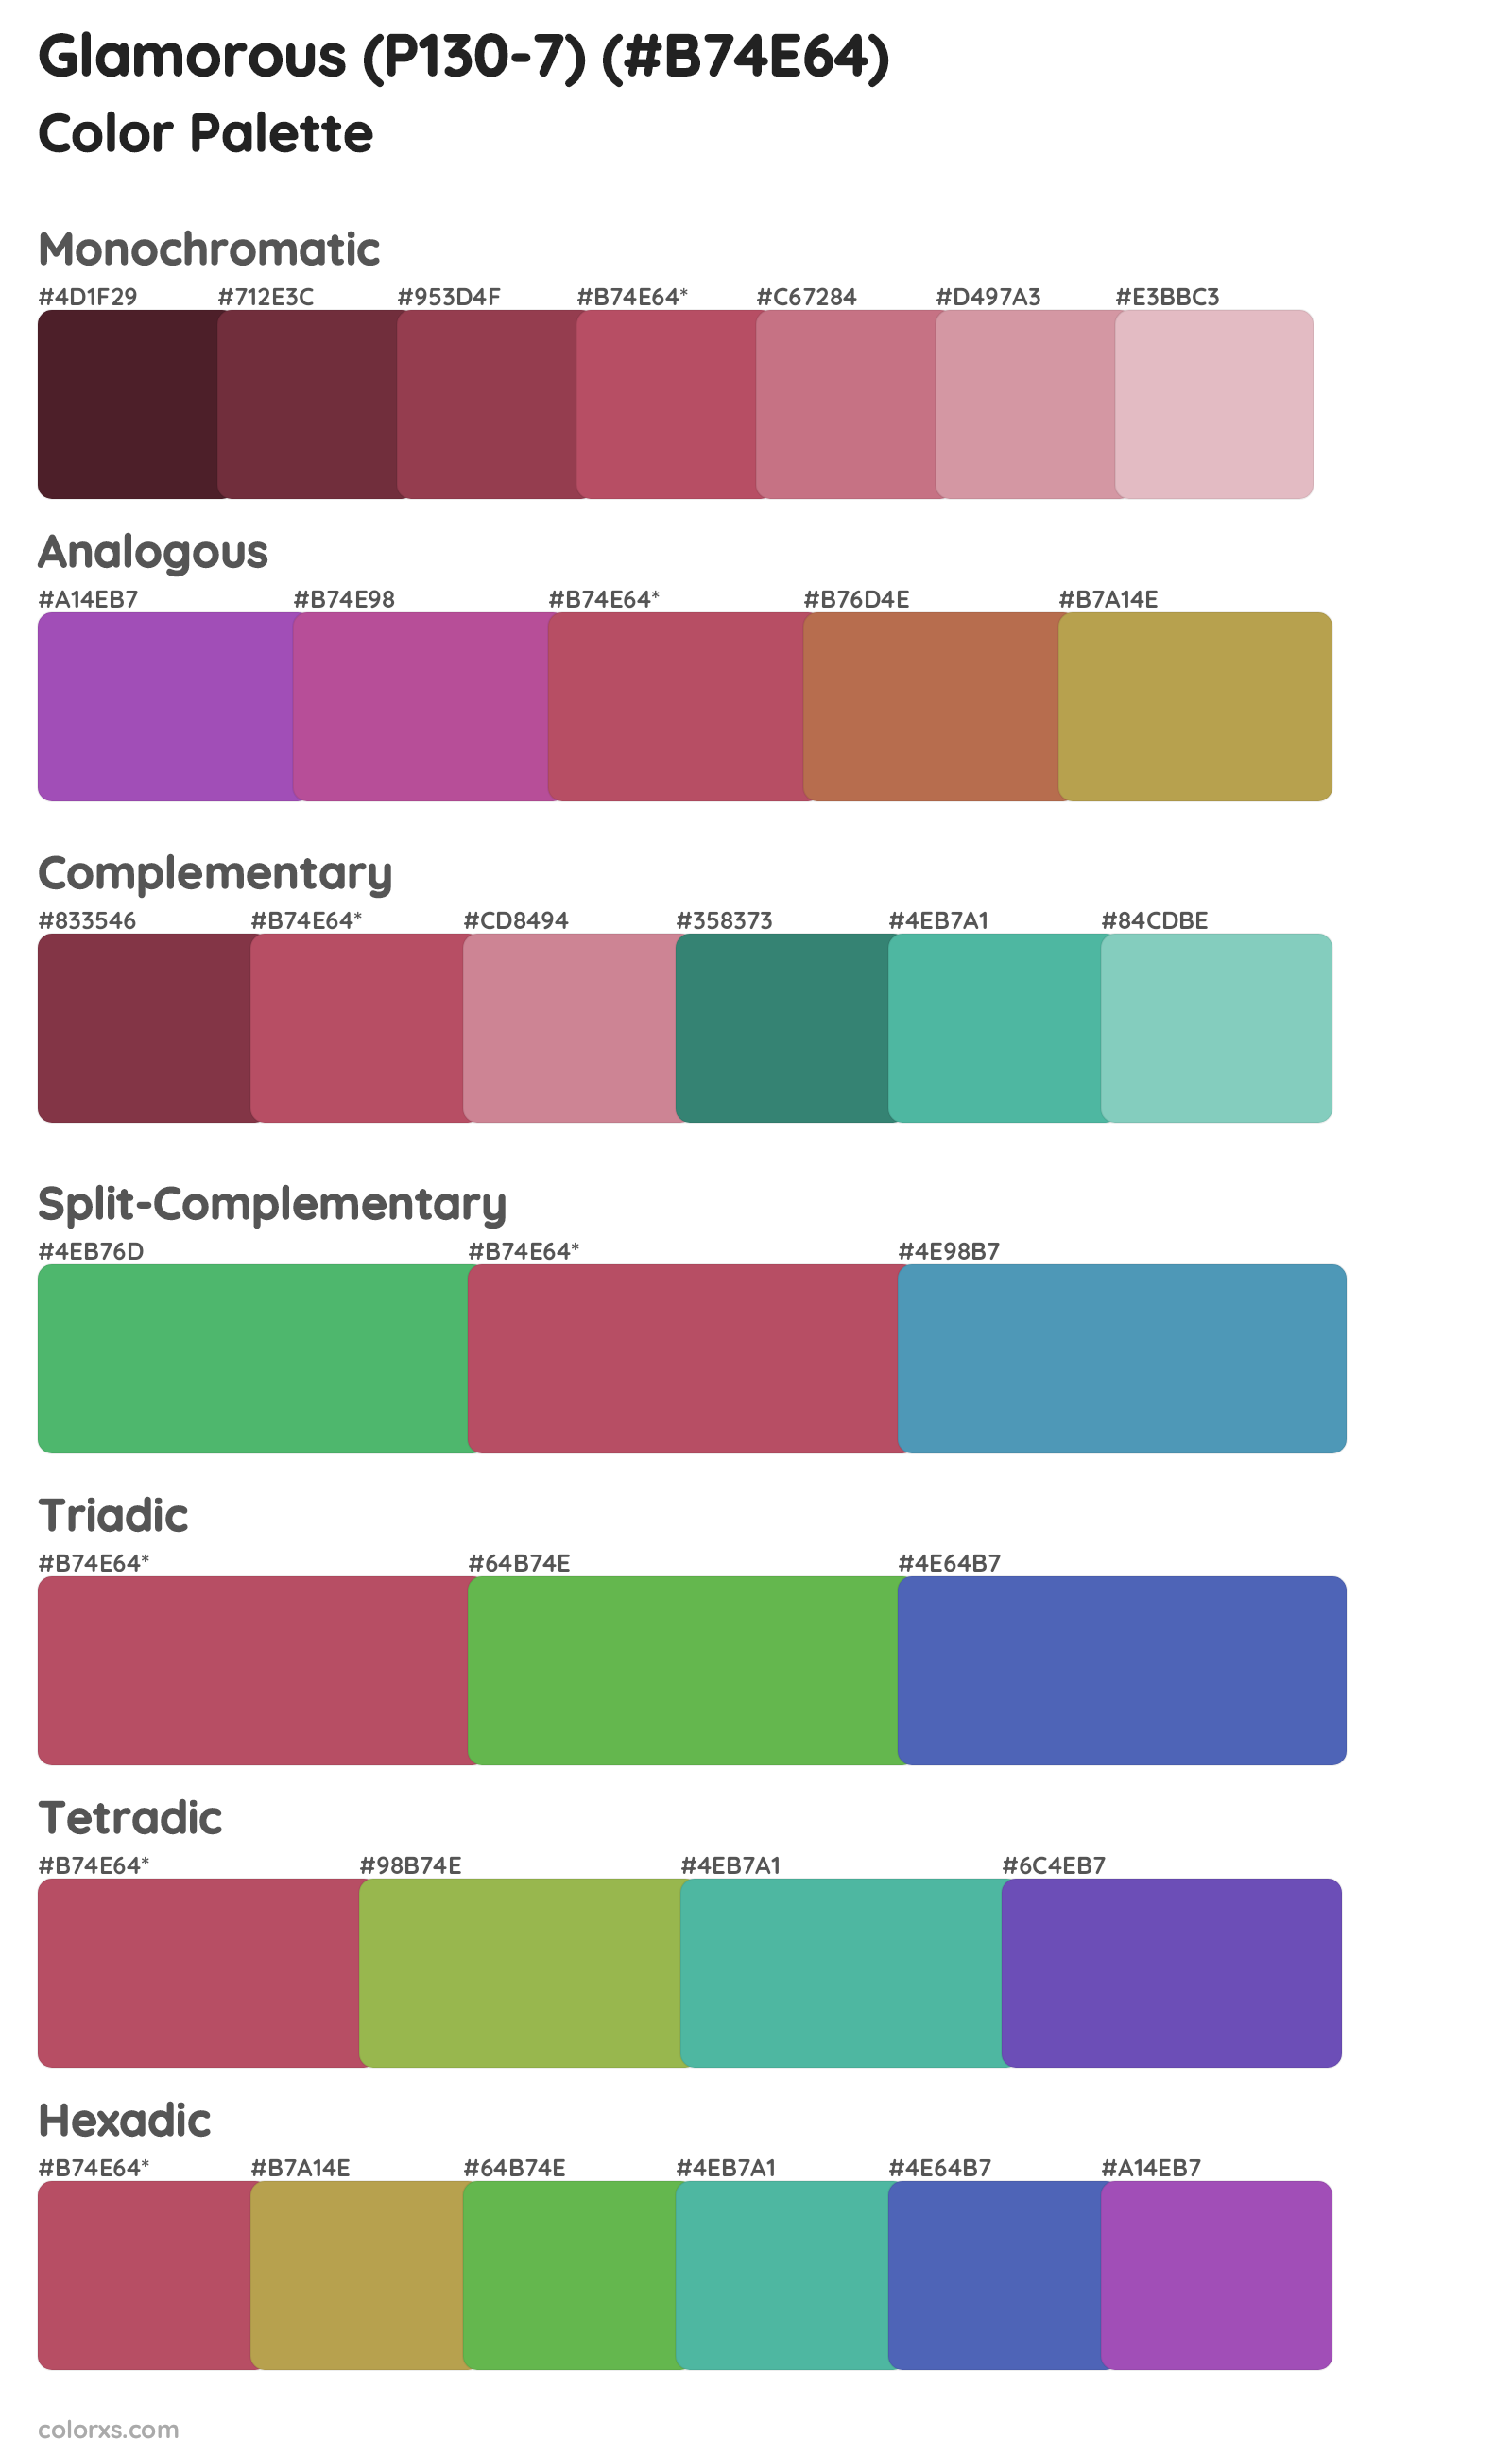 Glamorous (P130-7) Color Scheme Palettes